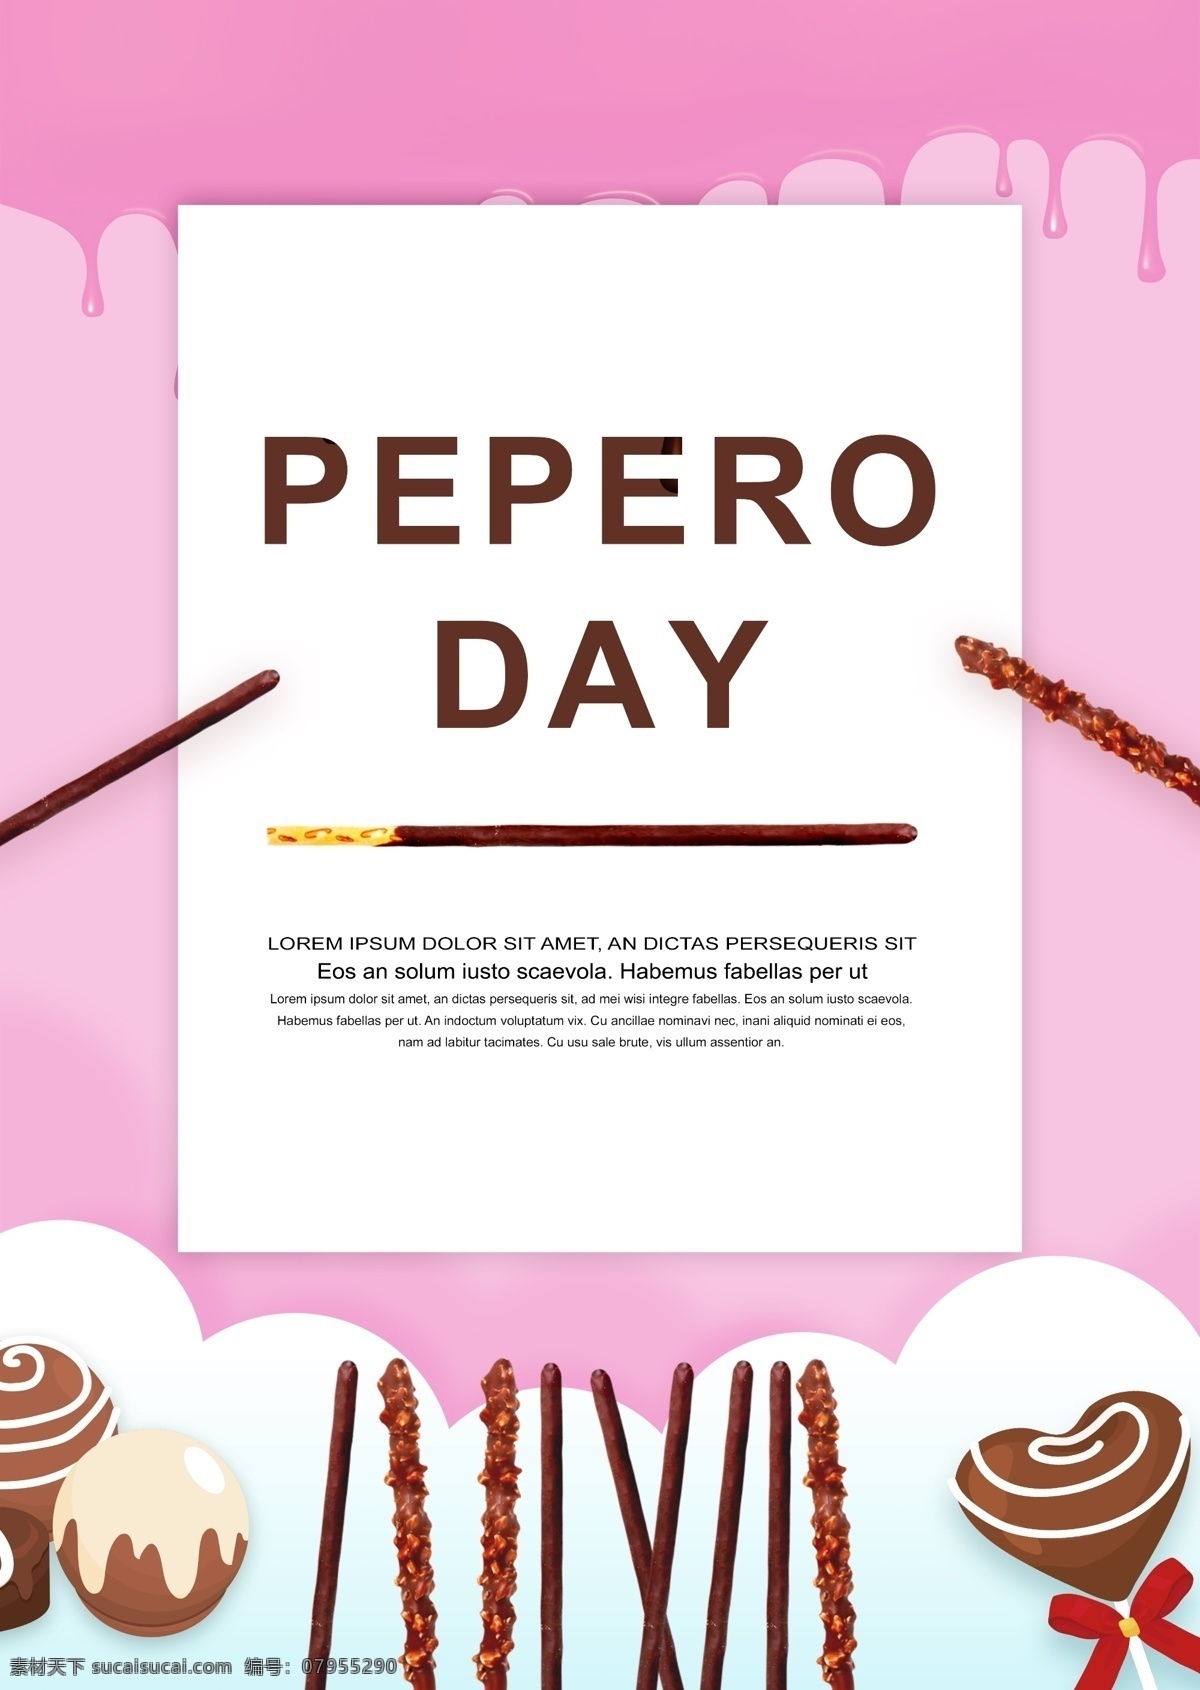 桃红色 逗人 喜爱 动画片 pepero 天 海报 巧克力 粉 可爱 巧克力吧 红色 咖喱 蛋糕 白色 精简 英语